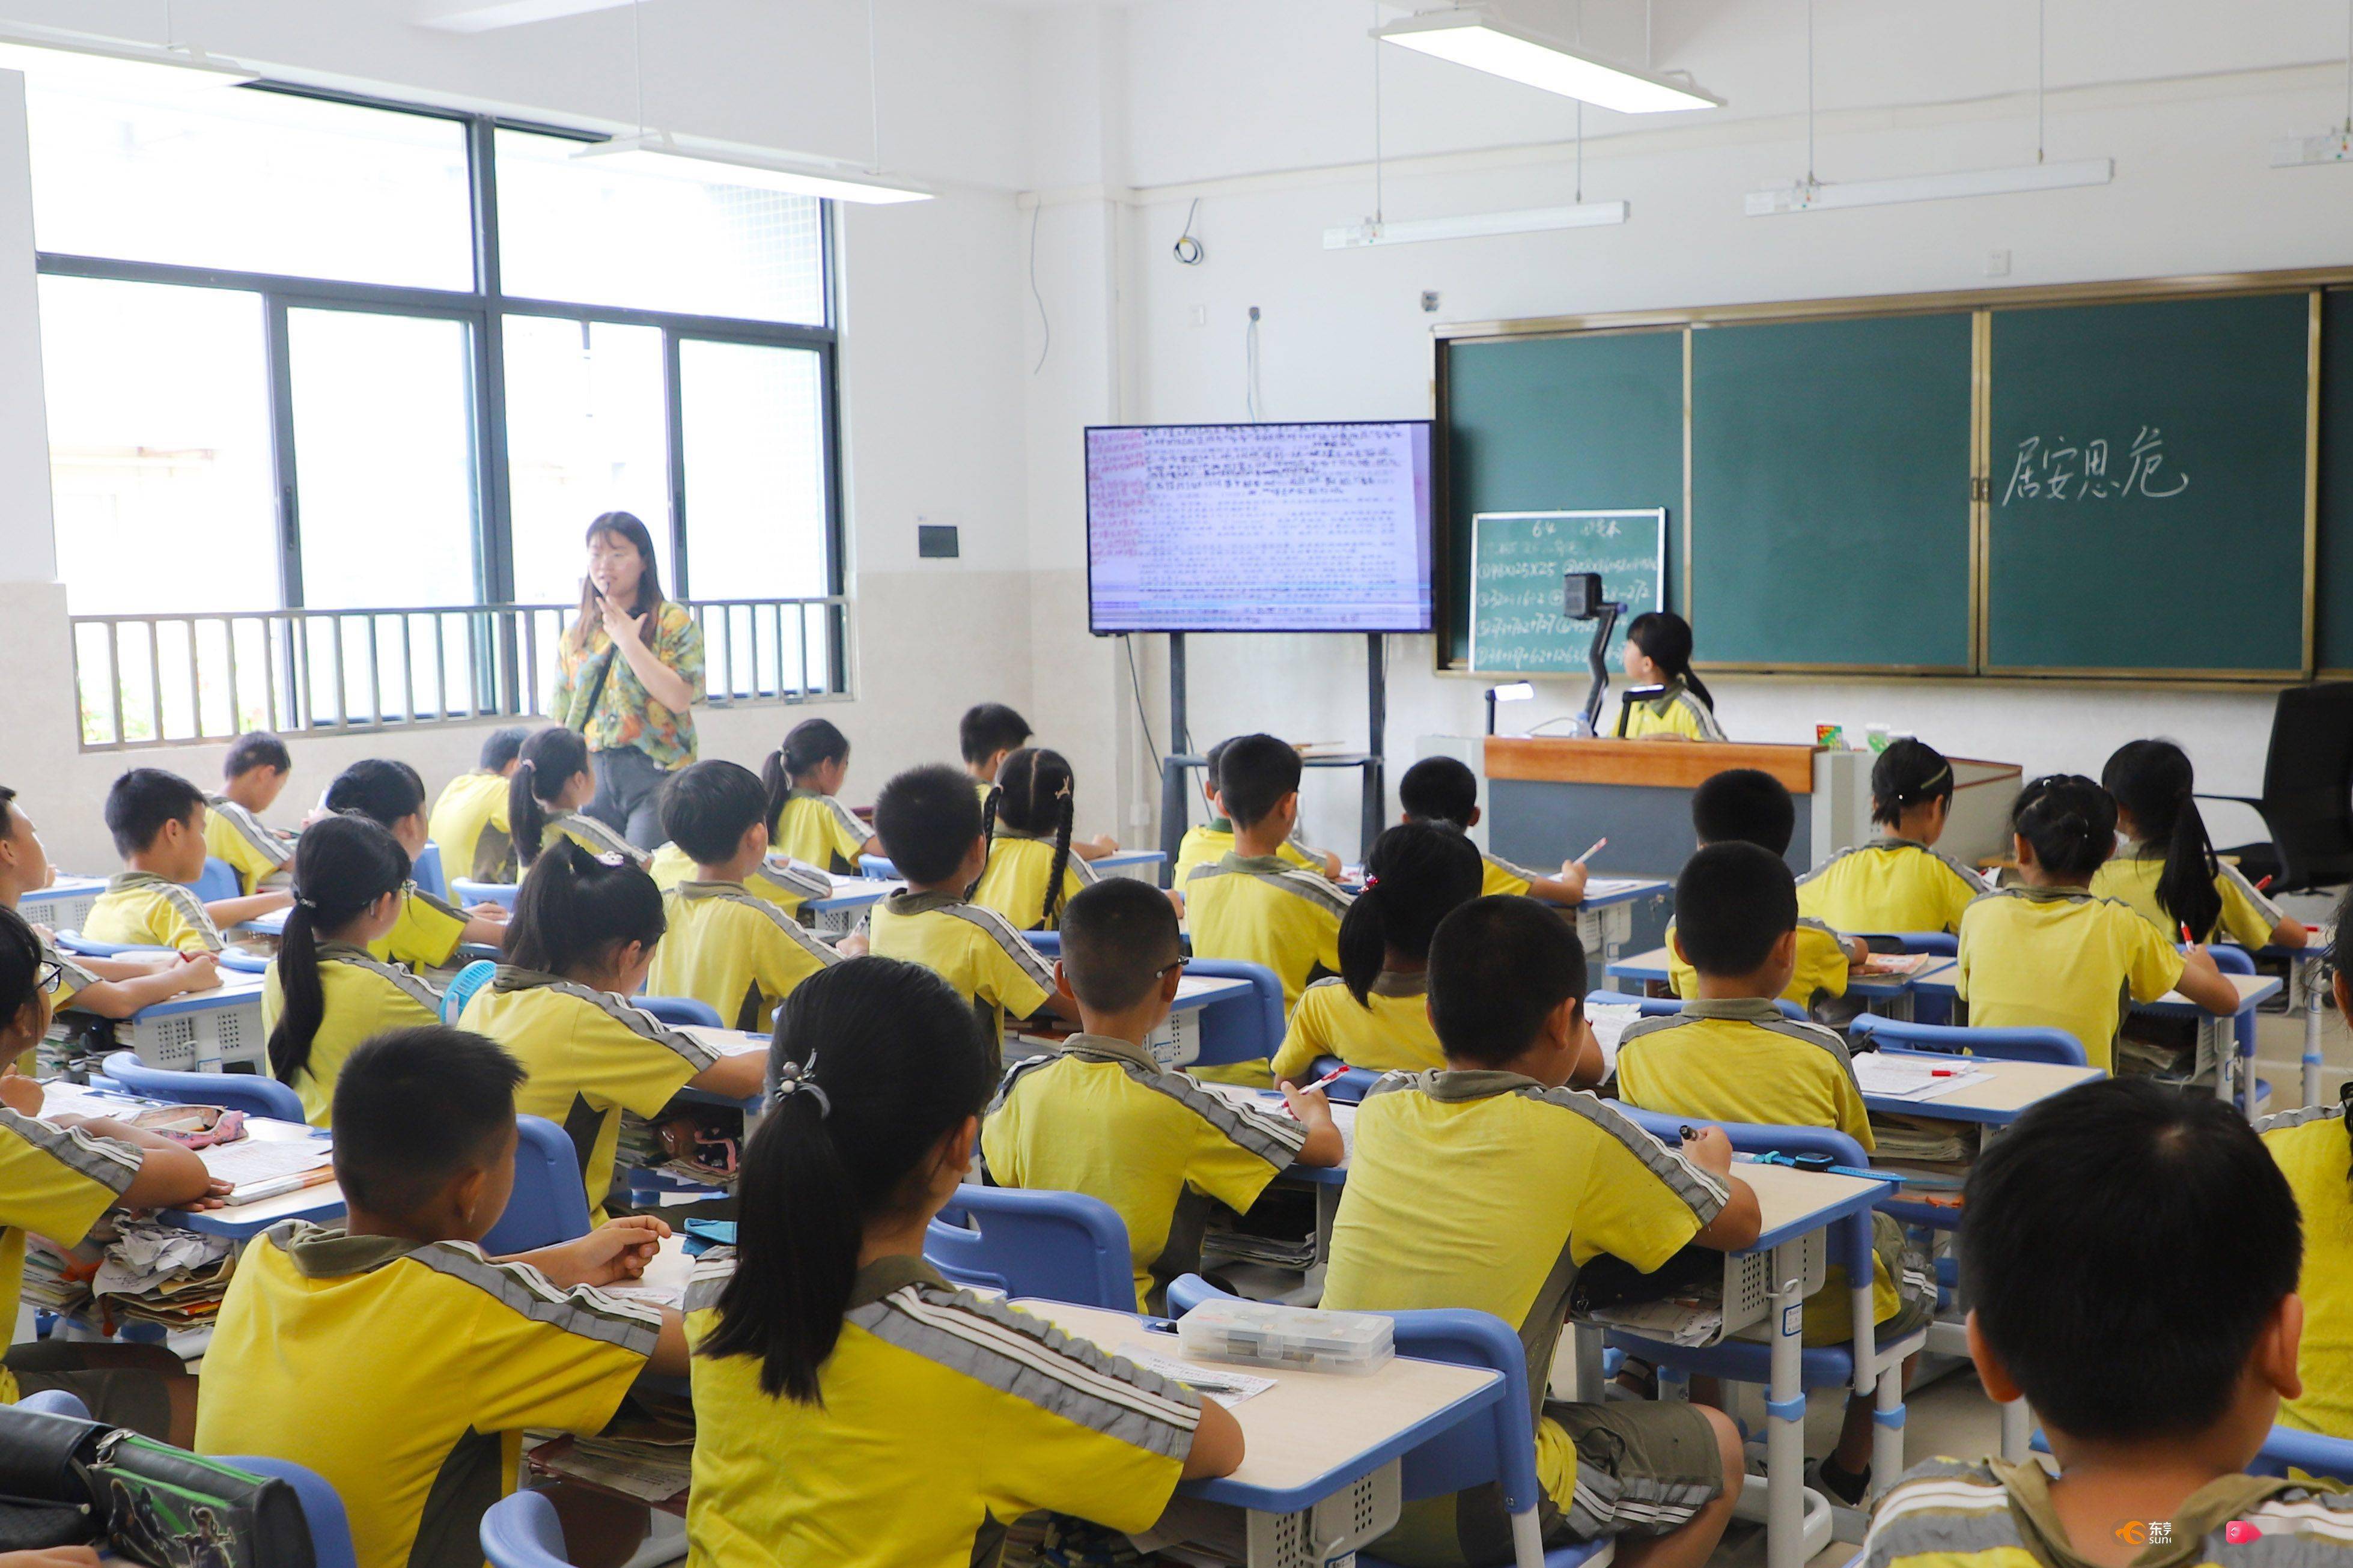 6月2日,黎村小学的学生们就已经搬入了新的教室,如今在新教室里听老师